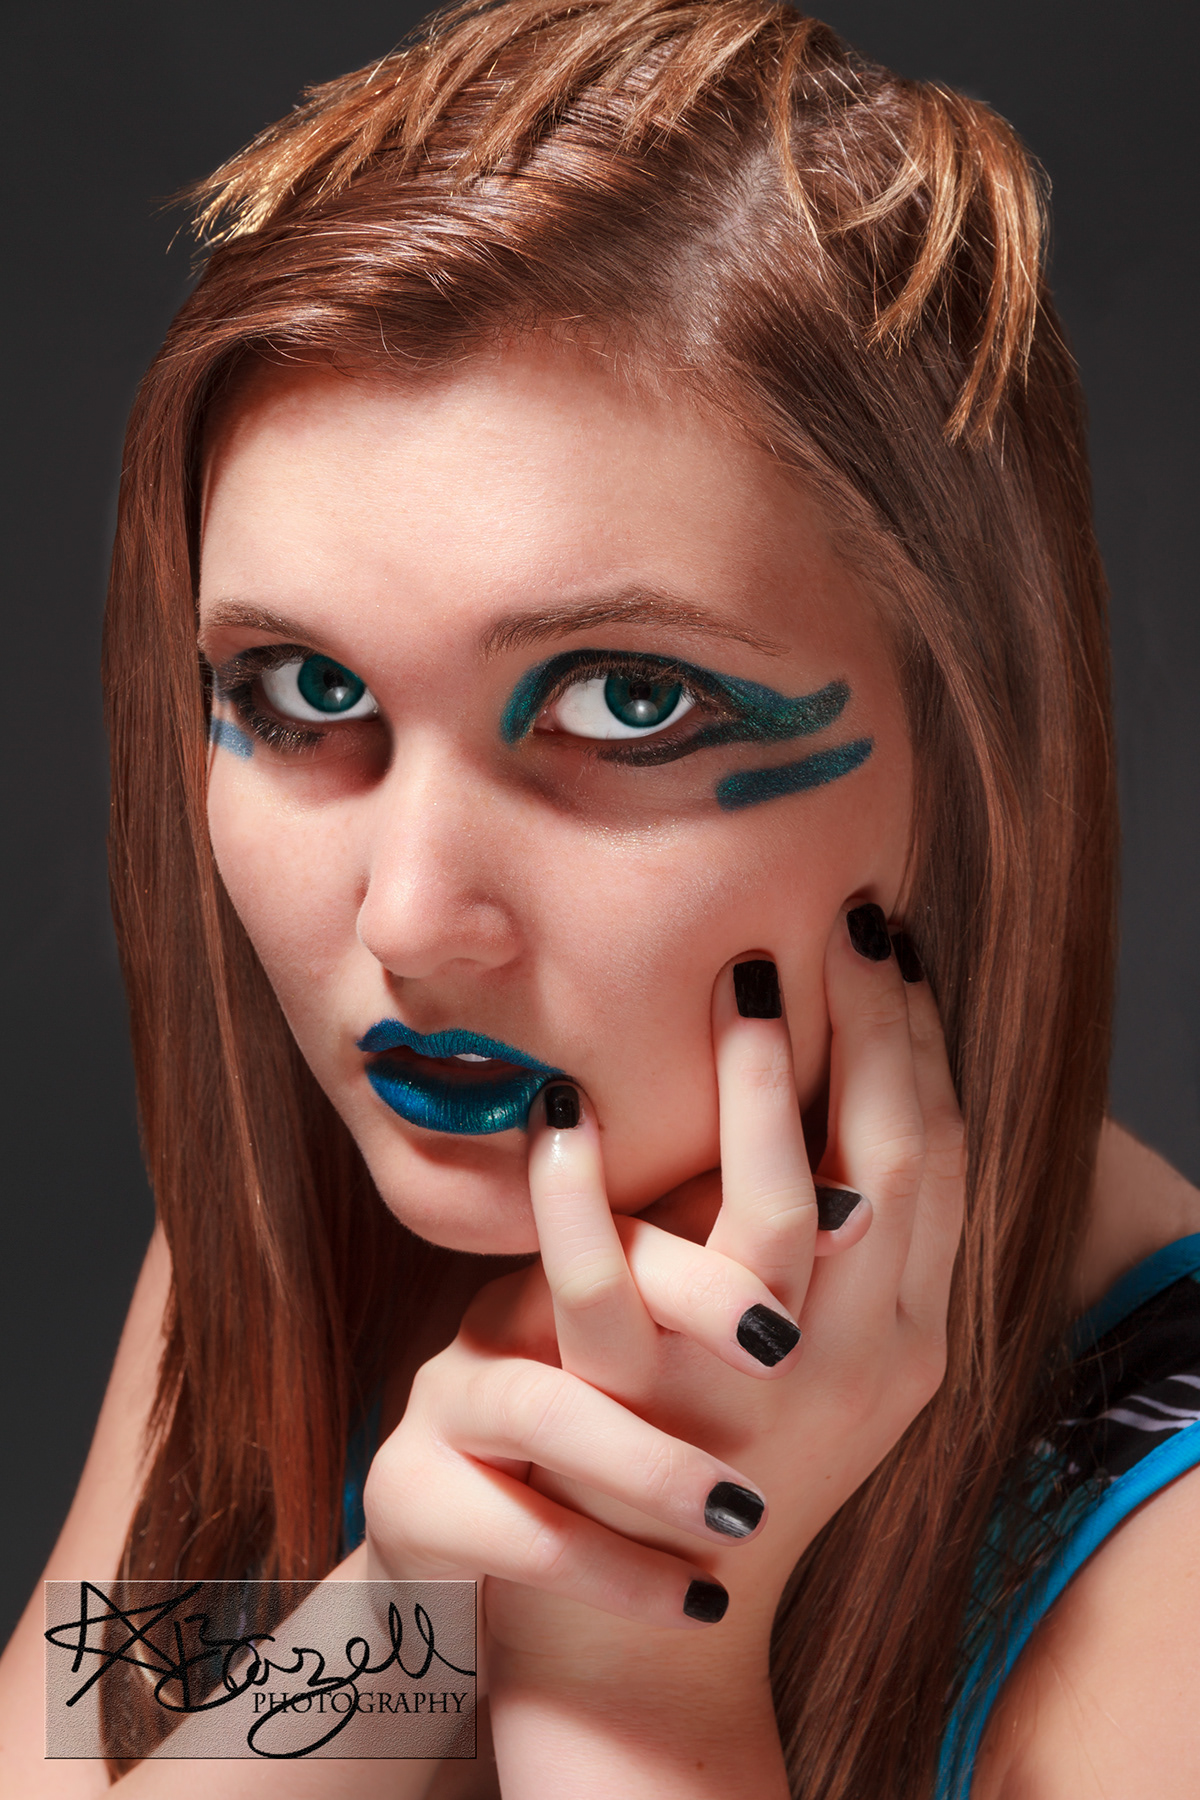 Studio Photography digital makeup portrait photography photoshop Adobe Bridge displacement Canon 7D